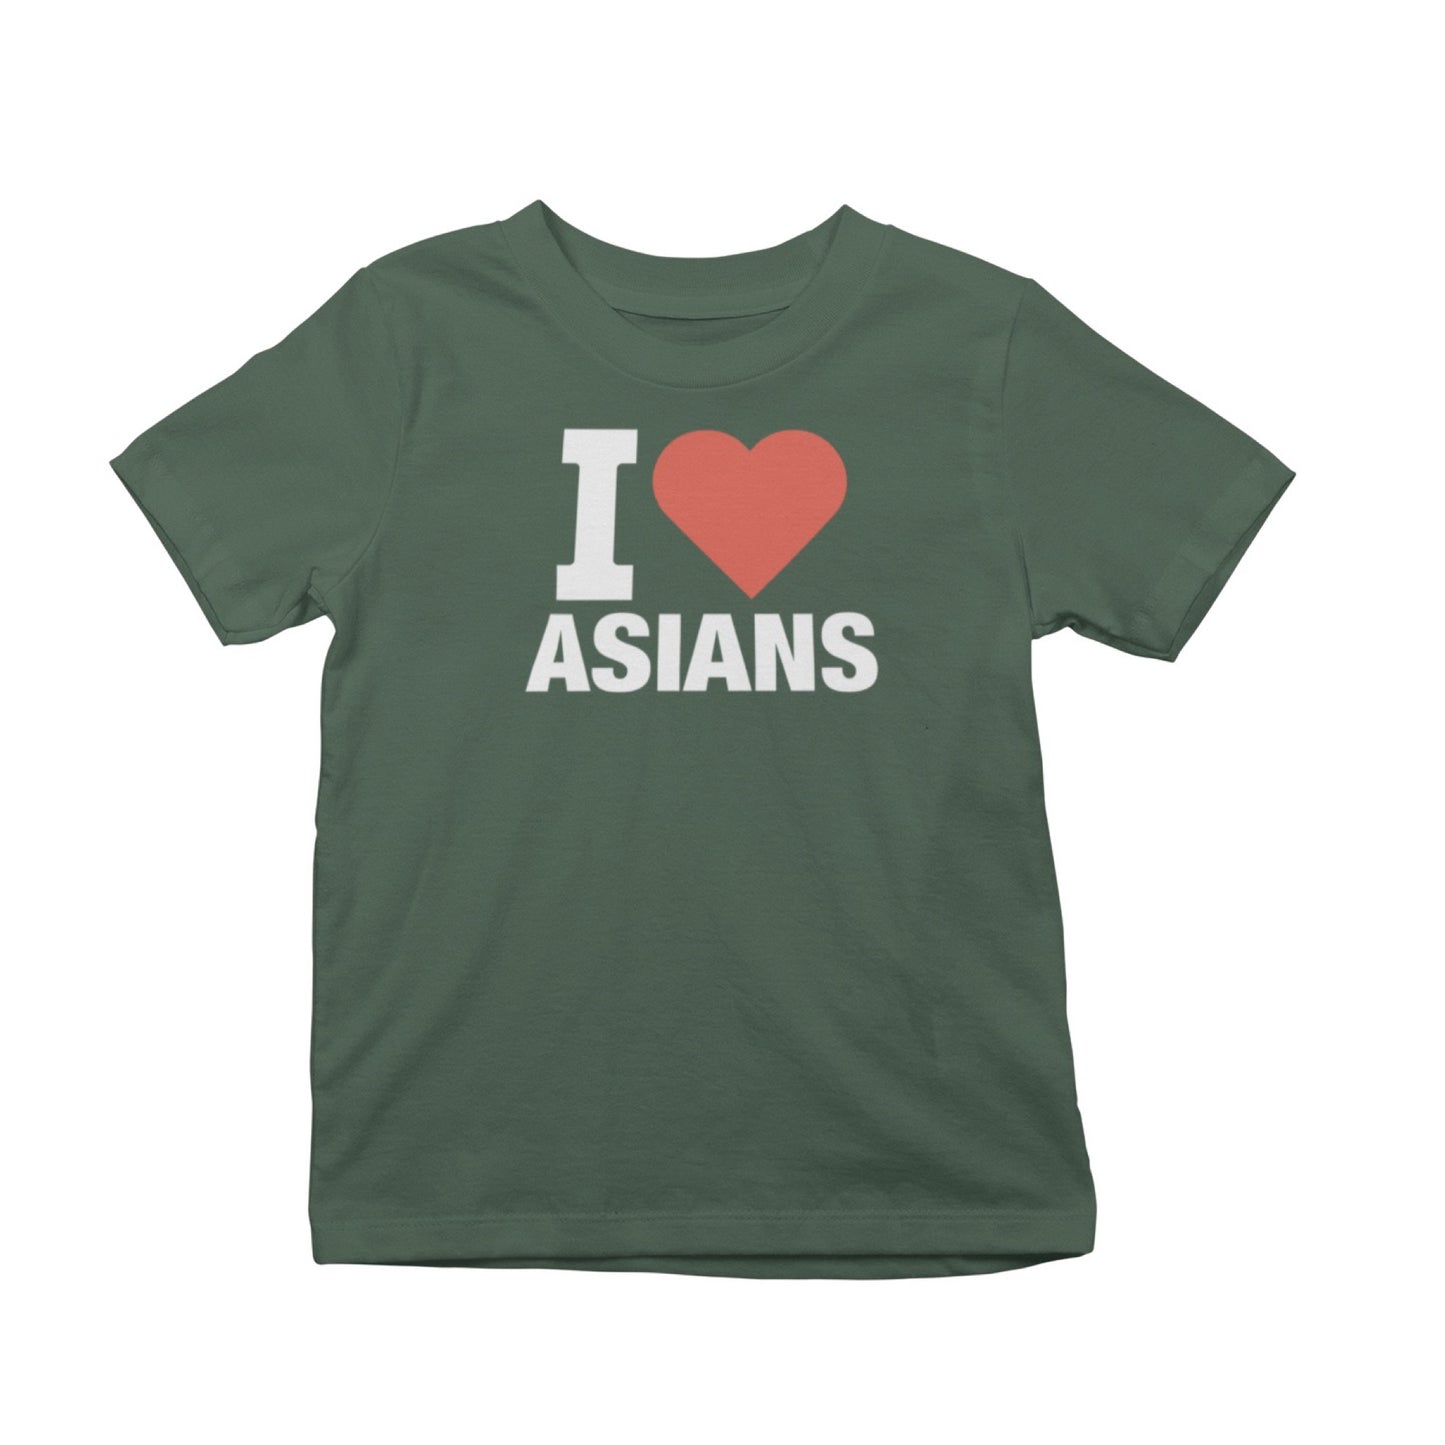 I Heart Asians T-Shirt